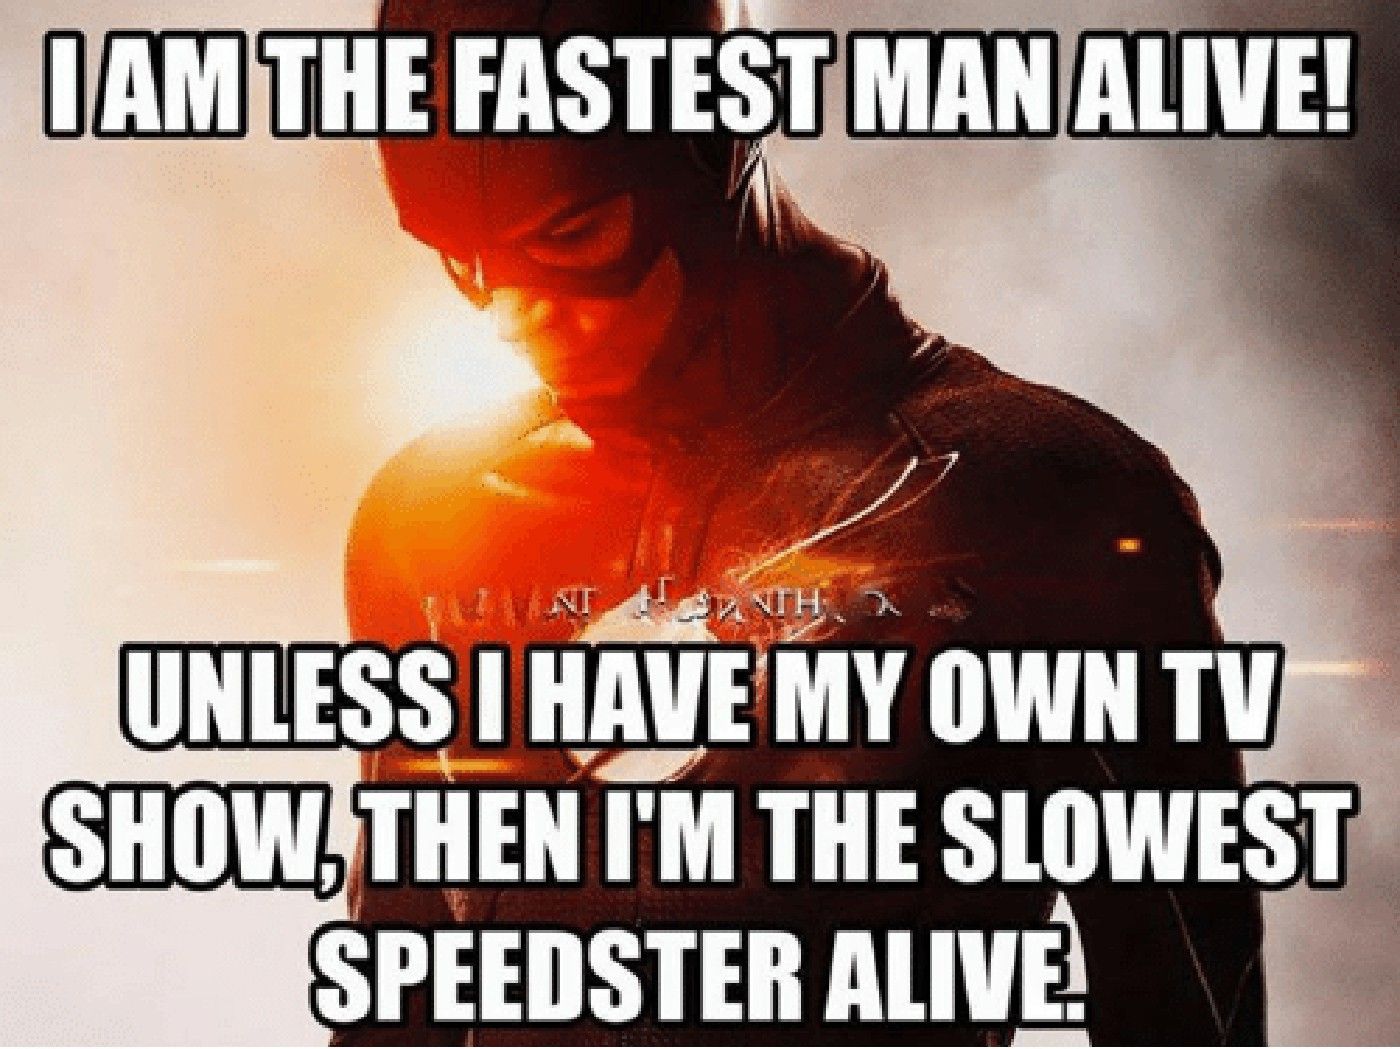 The Flash Slowest Speedster Alive